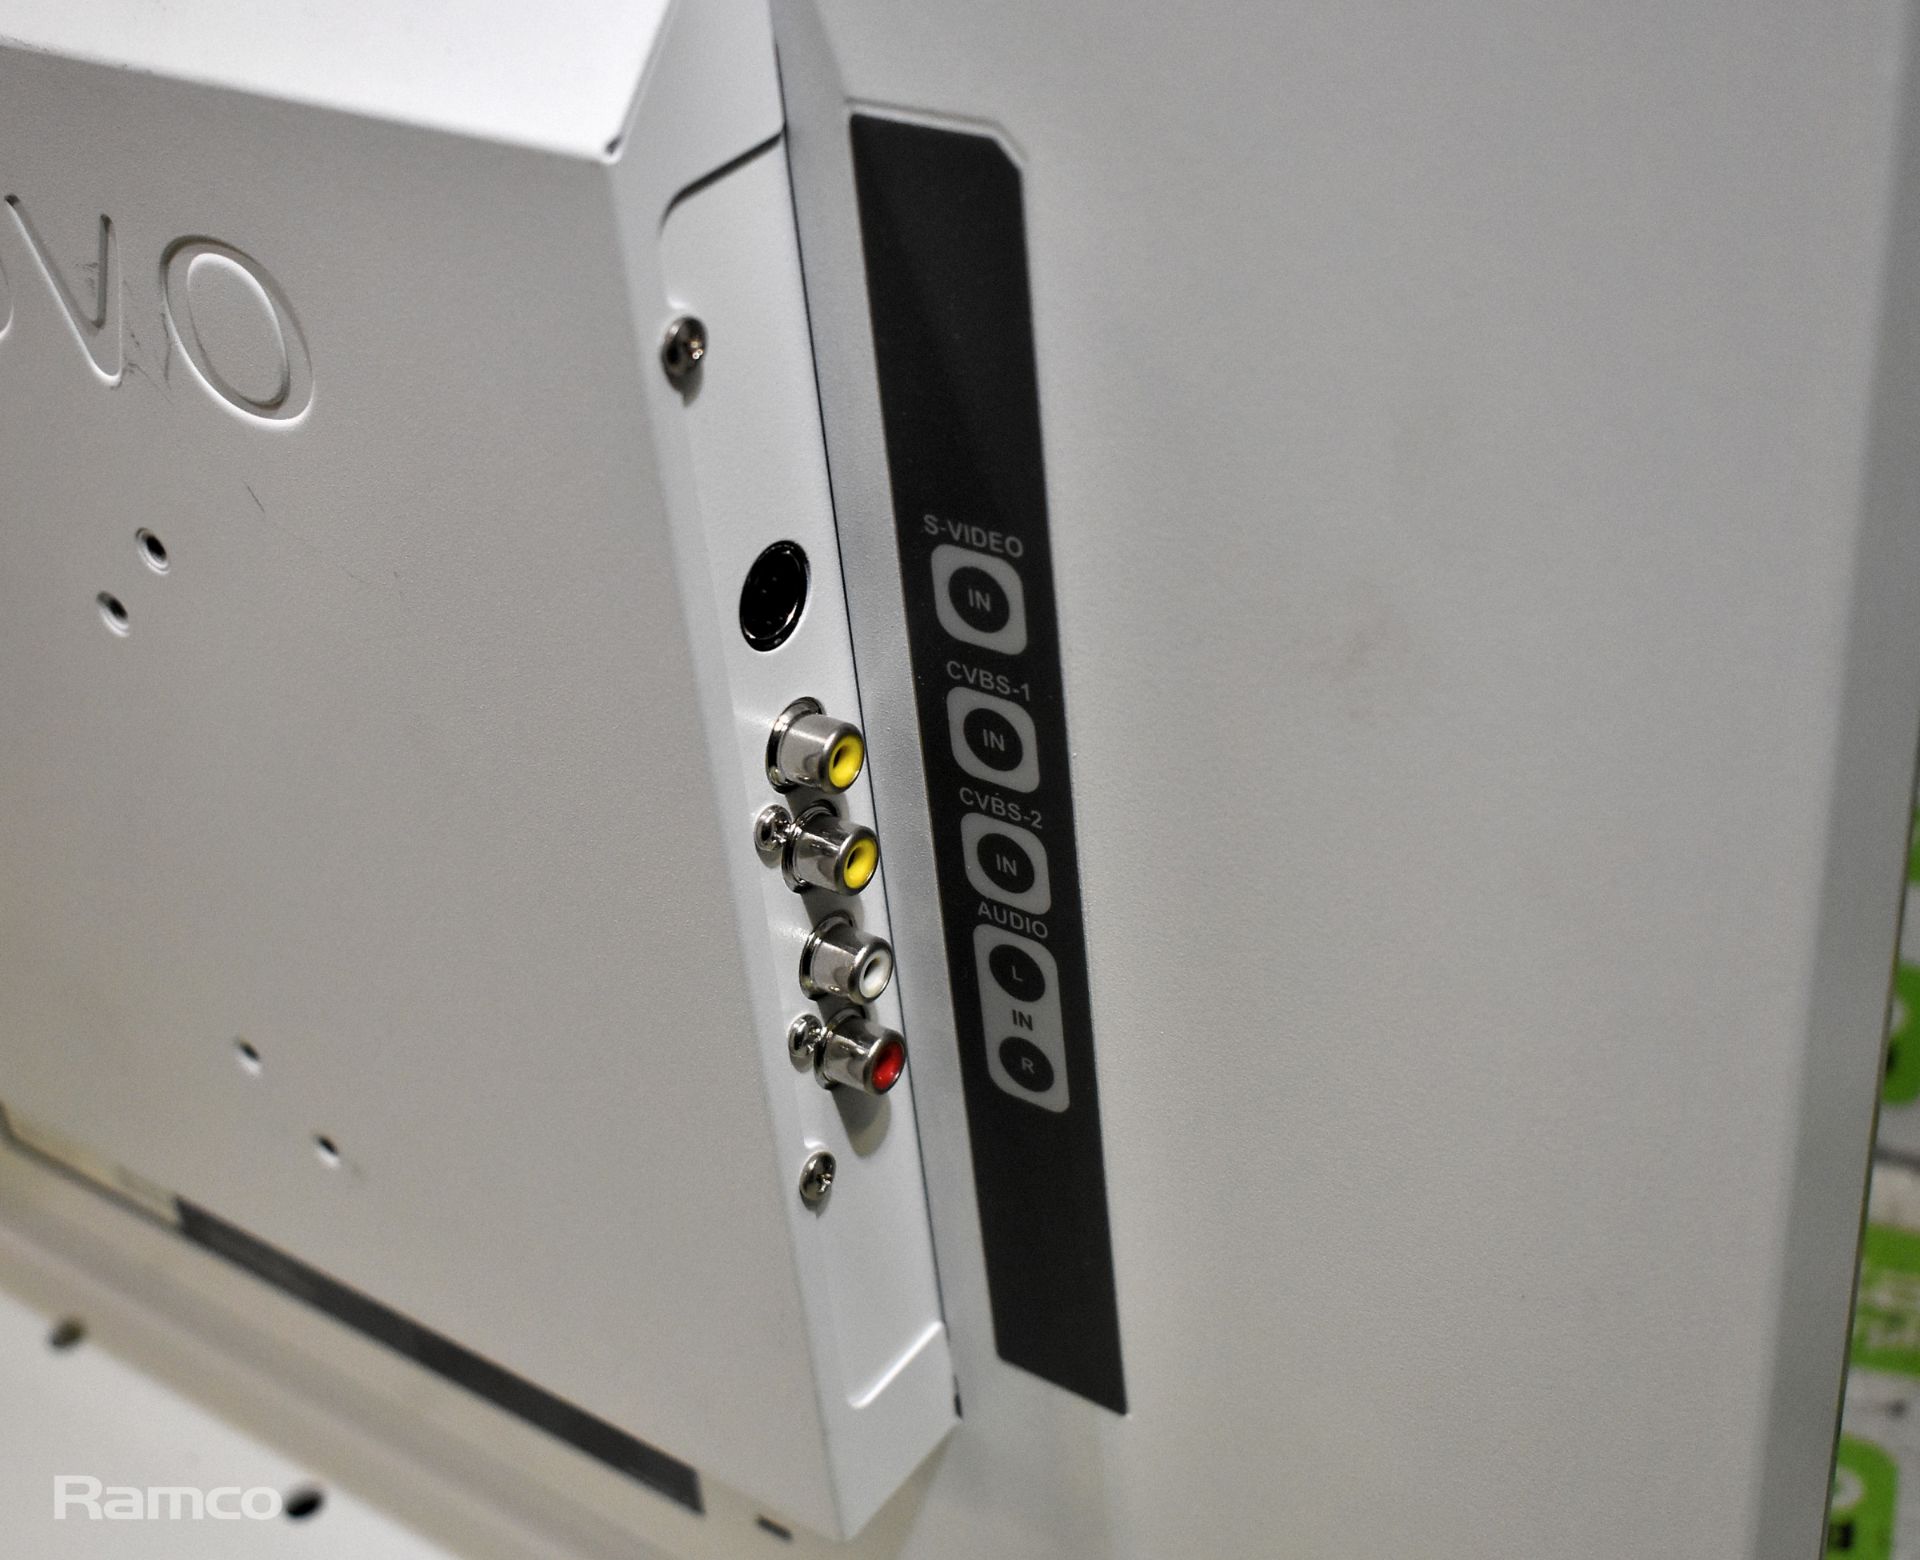 AG Neovo 22 inch LED backlit monitor - model DR-22 - Image 5 of 6